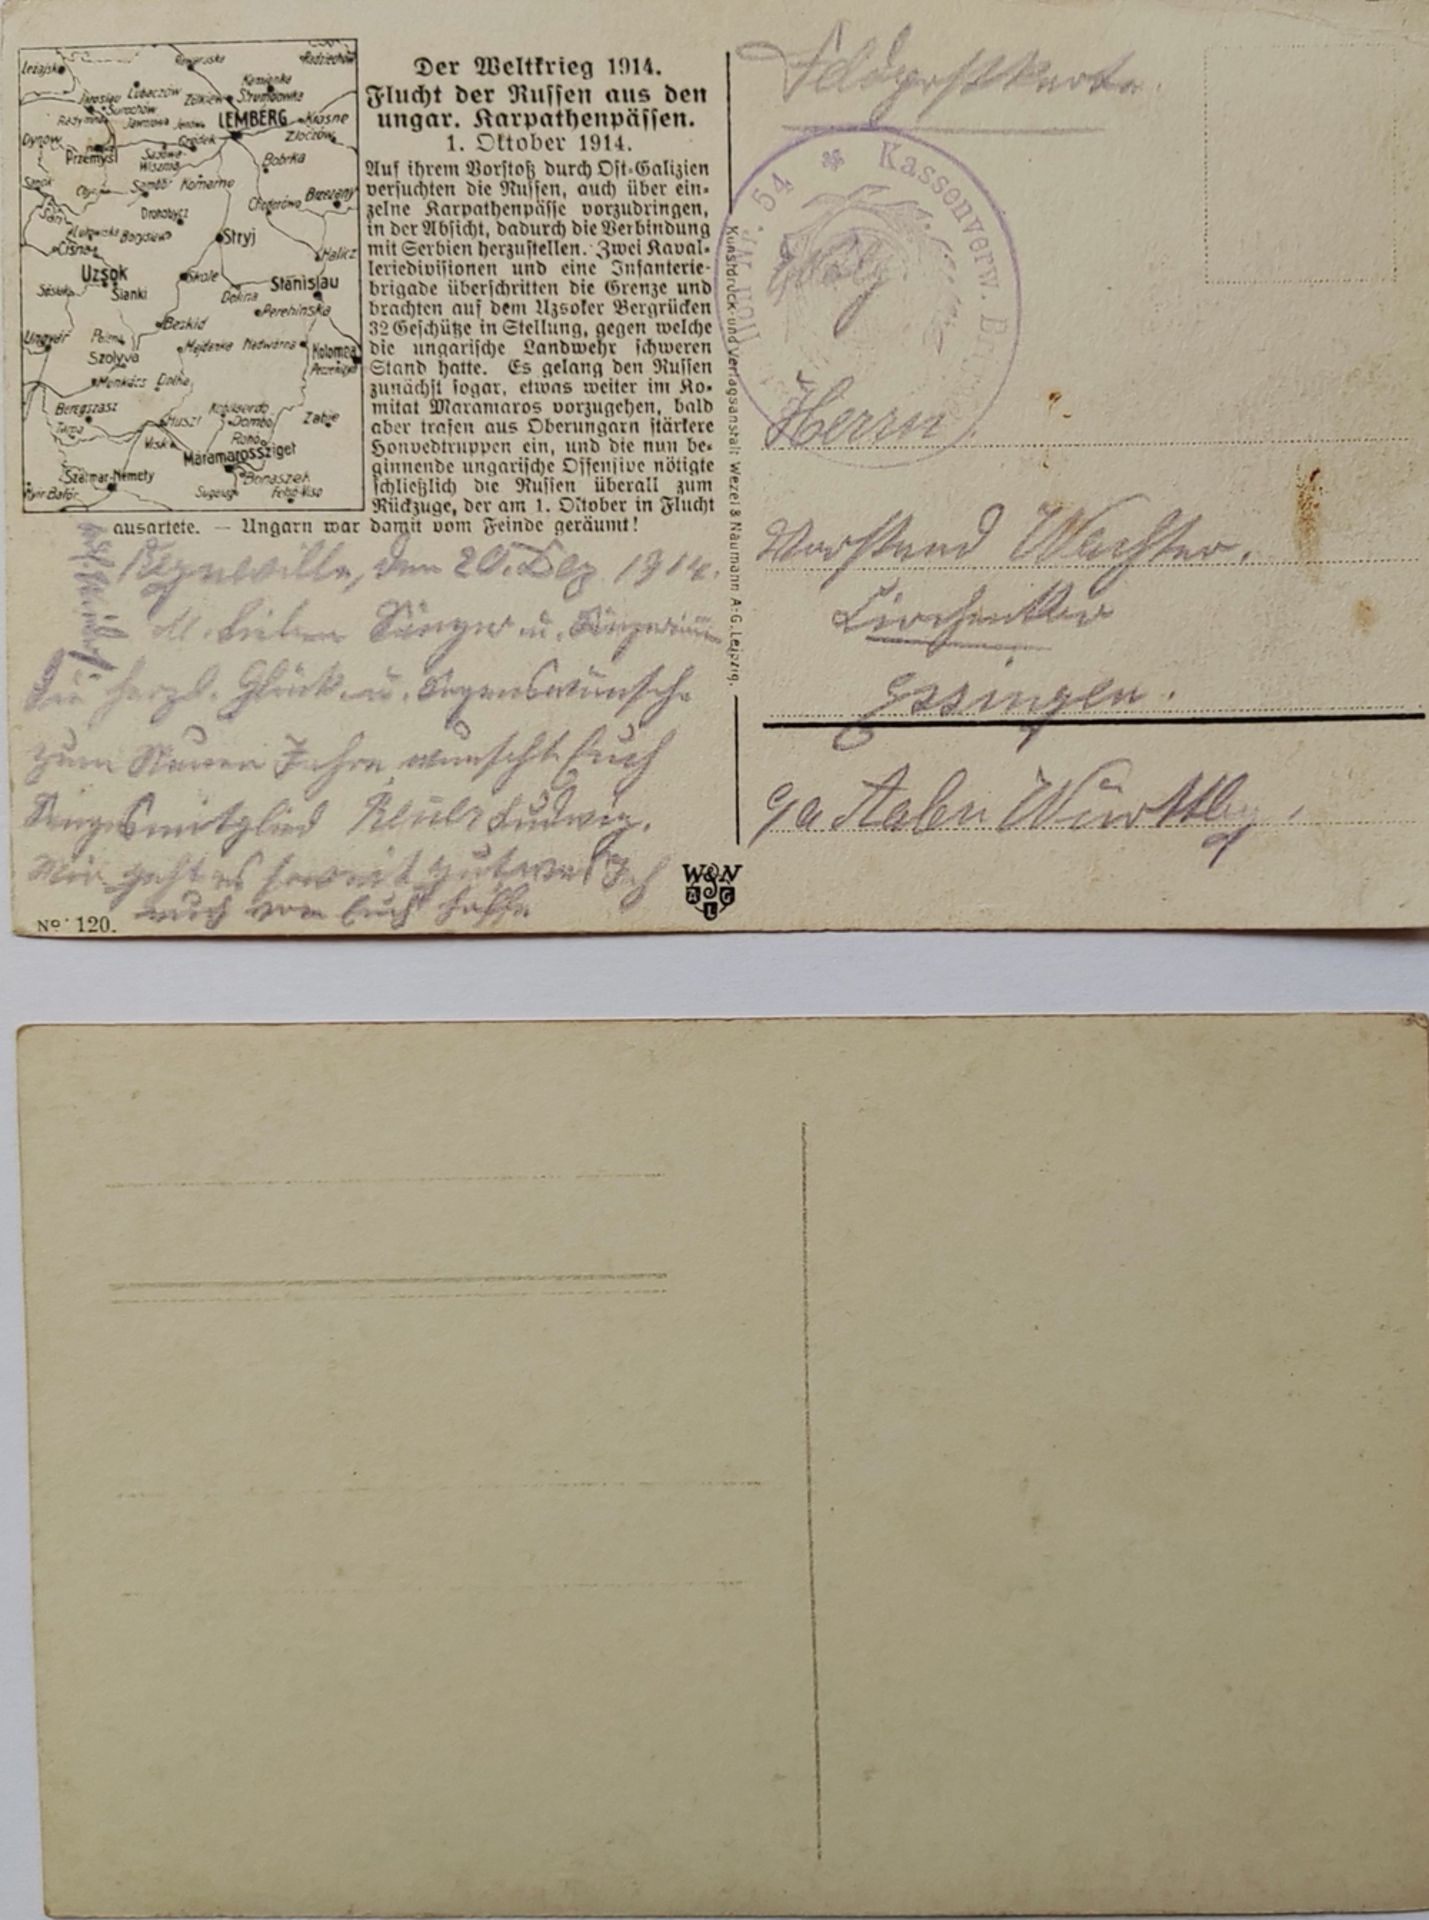 2 Postkarten 1. Weltkrieg dabei eine Privat Fotokarte "abgeschossenes deutsches Flugzeug", 1x - Image 2 of 2